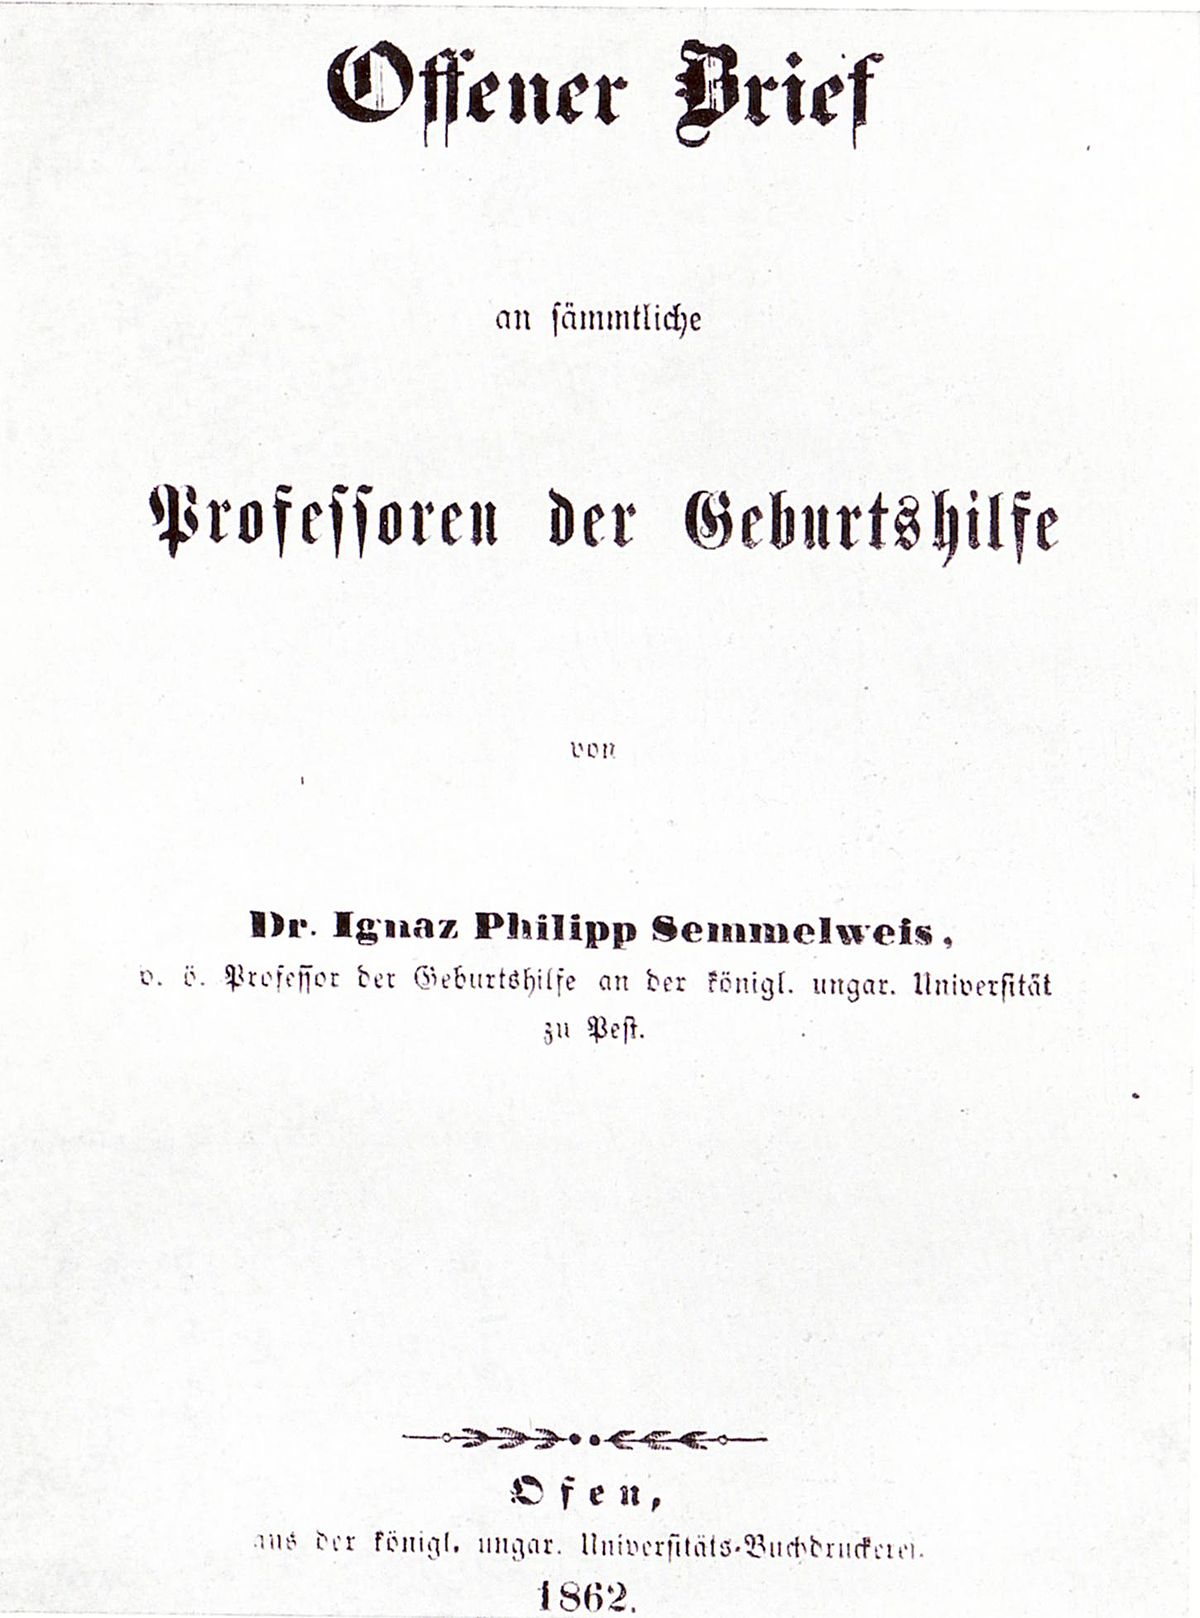 Открытое письмо И. Ф. Земмельвейса профессорам-педиатрам, 1862.